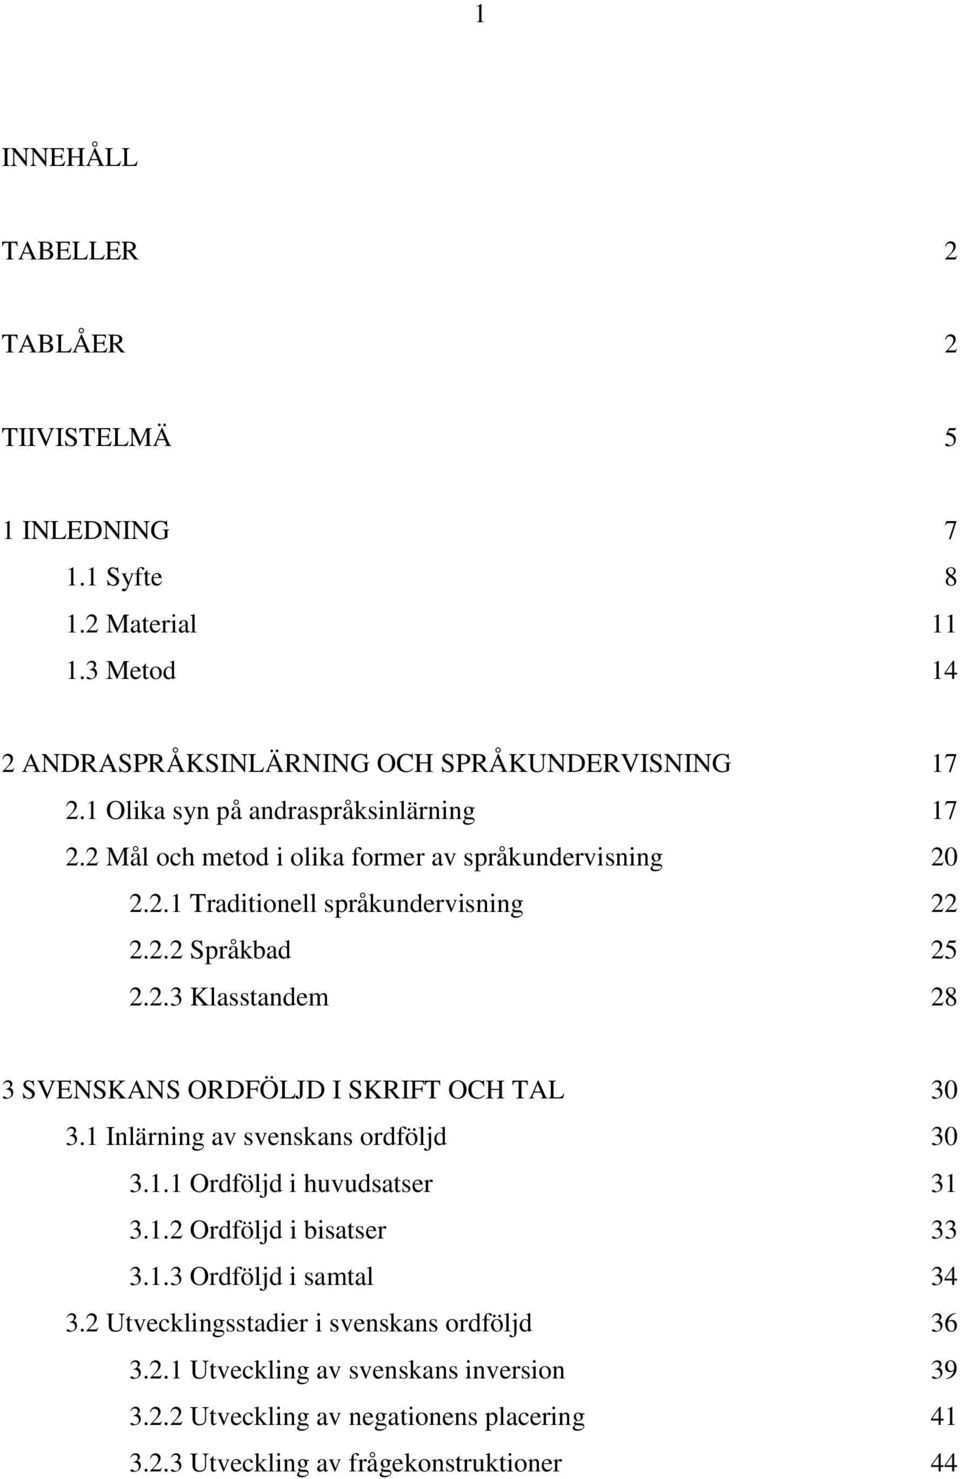 1 Inlärning av svenskans ordföljd 30 3.1.1 Ordföljd i huvudsatser 31 3.1.2 Ordföljd i bisatser 33 3.1.3 Ordföljd i samtal 34 3.